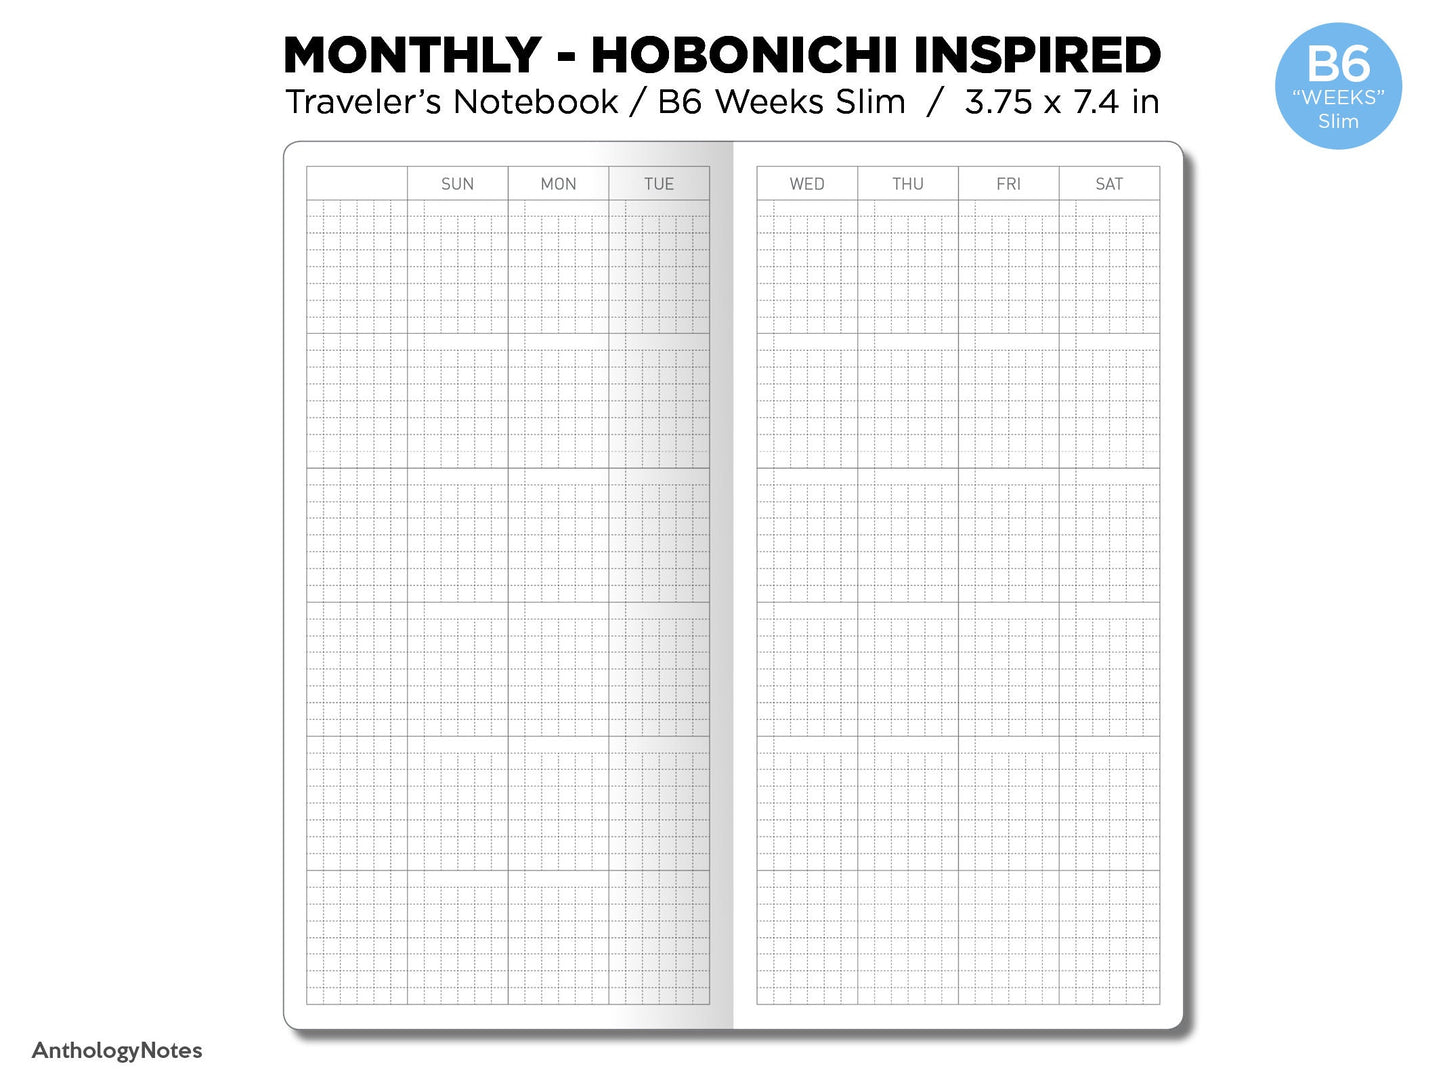 TN WEEKS Monthly Hobonichi Weeks Inspired Layout GRID Monday or Sunday Start Minimalist